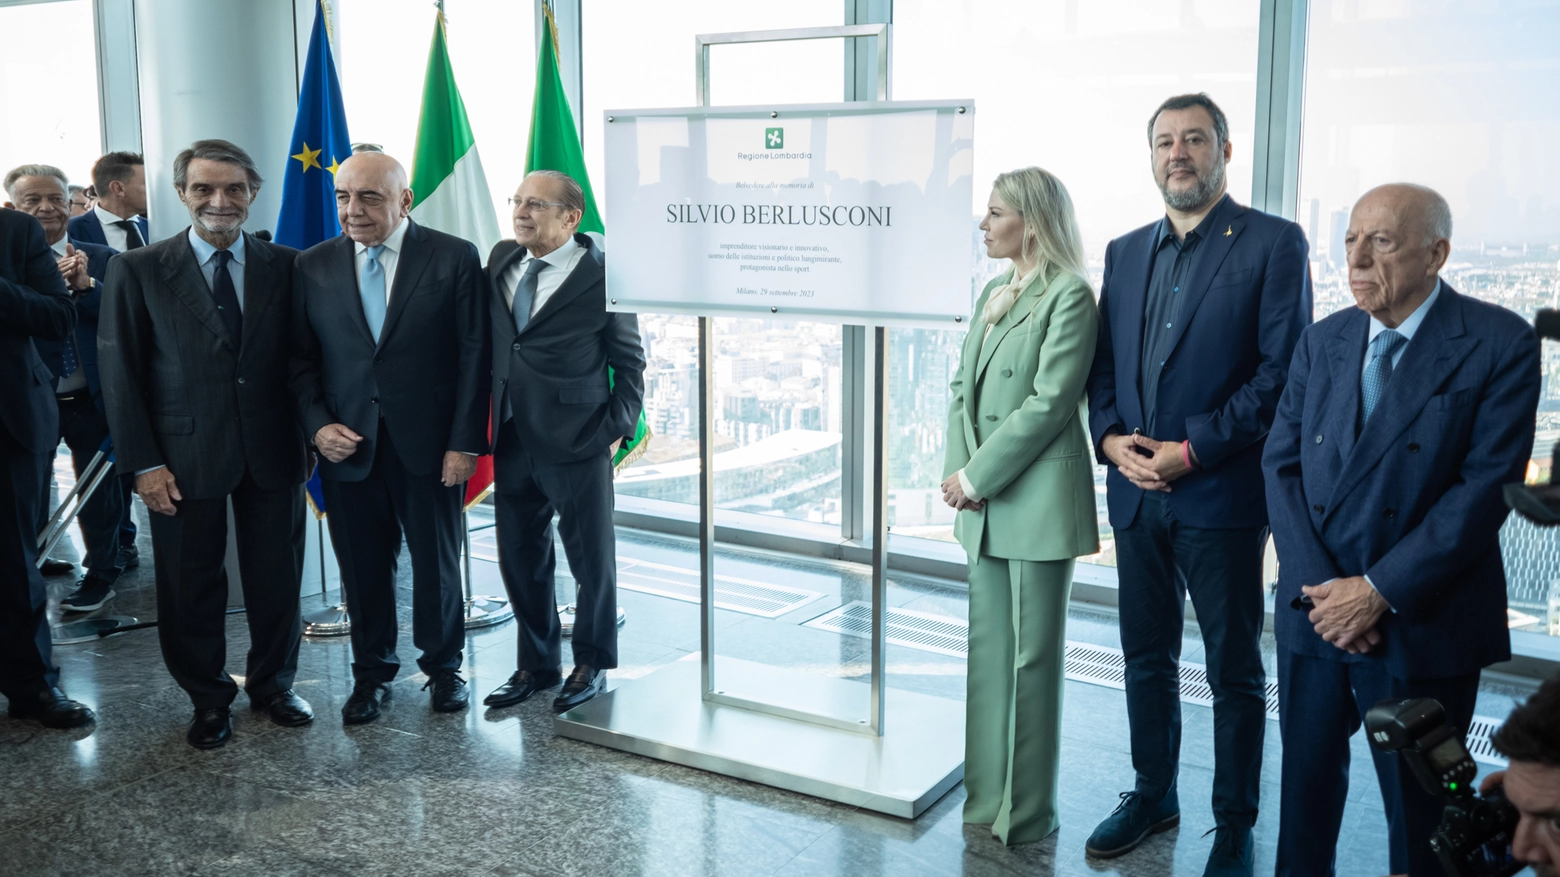 La cerimonia di intitolazione a Silvio Berlusconi del belvedere del palazzo della Regione Lombardia